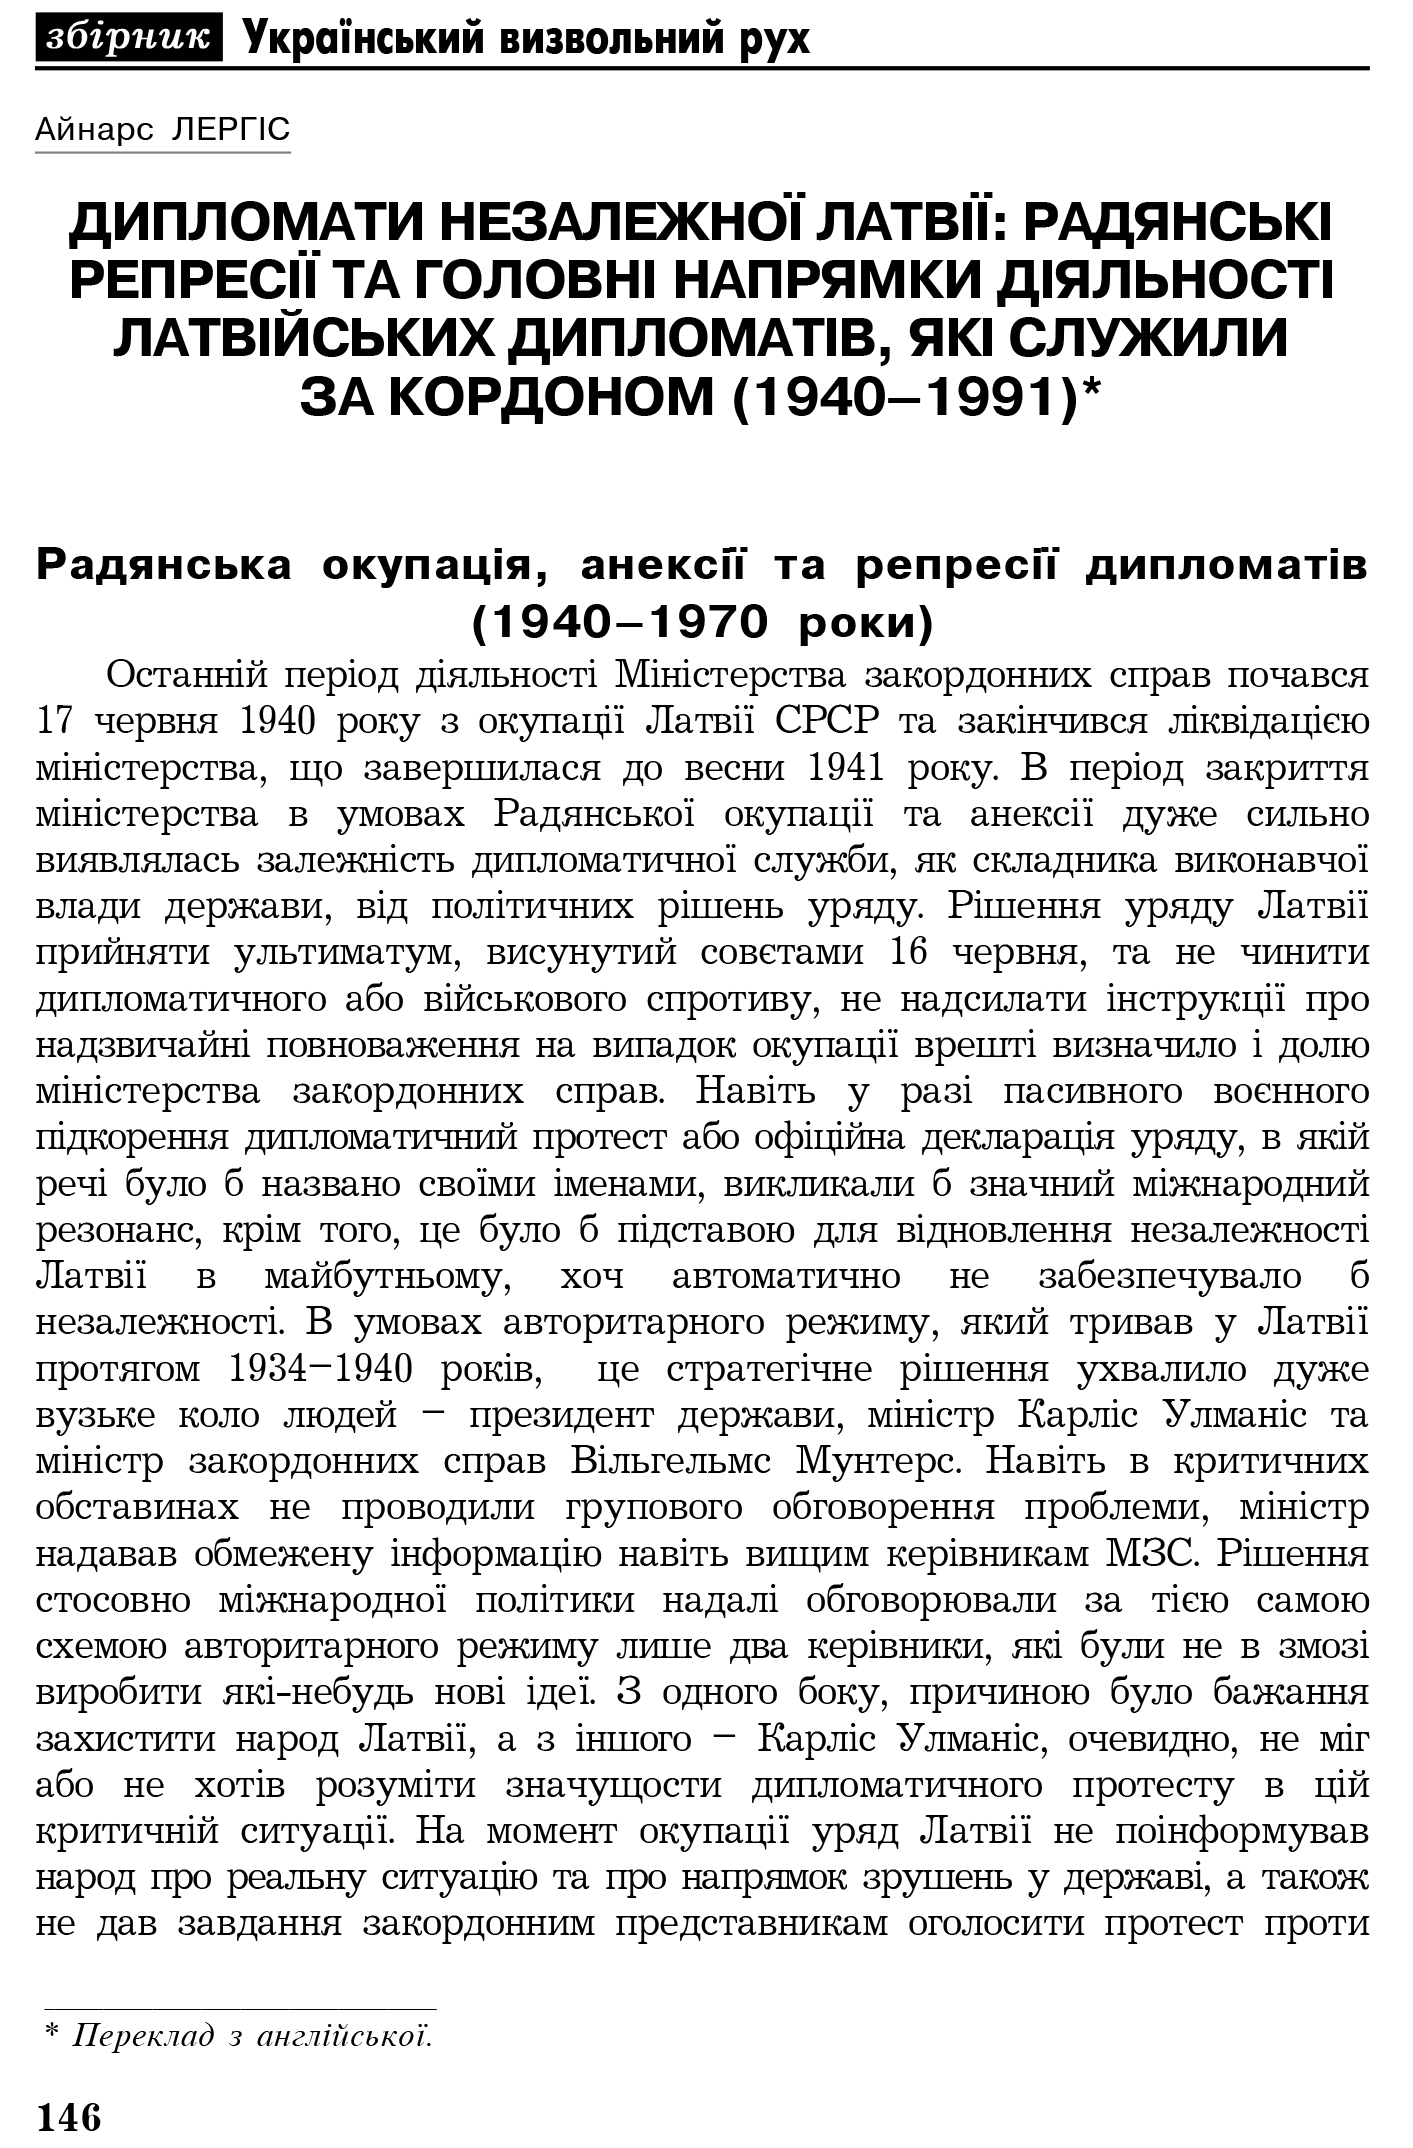 Український визвольний рух №4, ст. 146 - 151